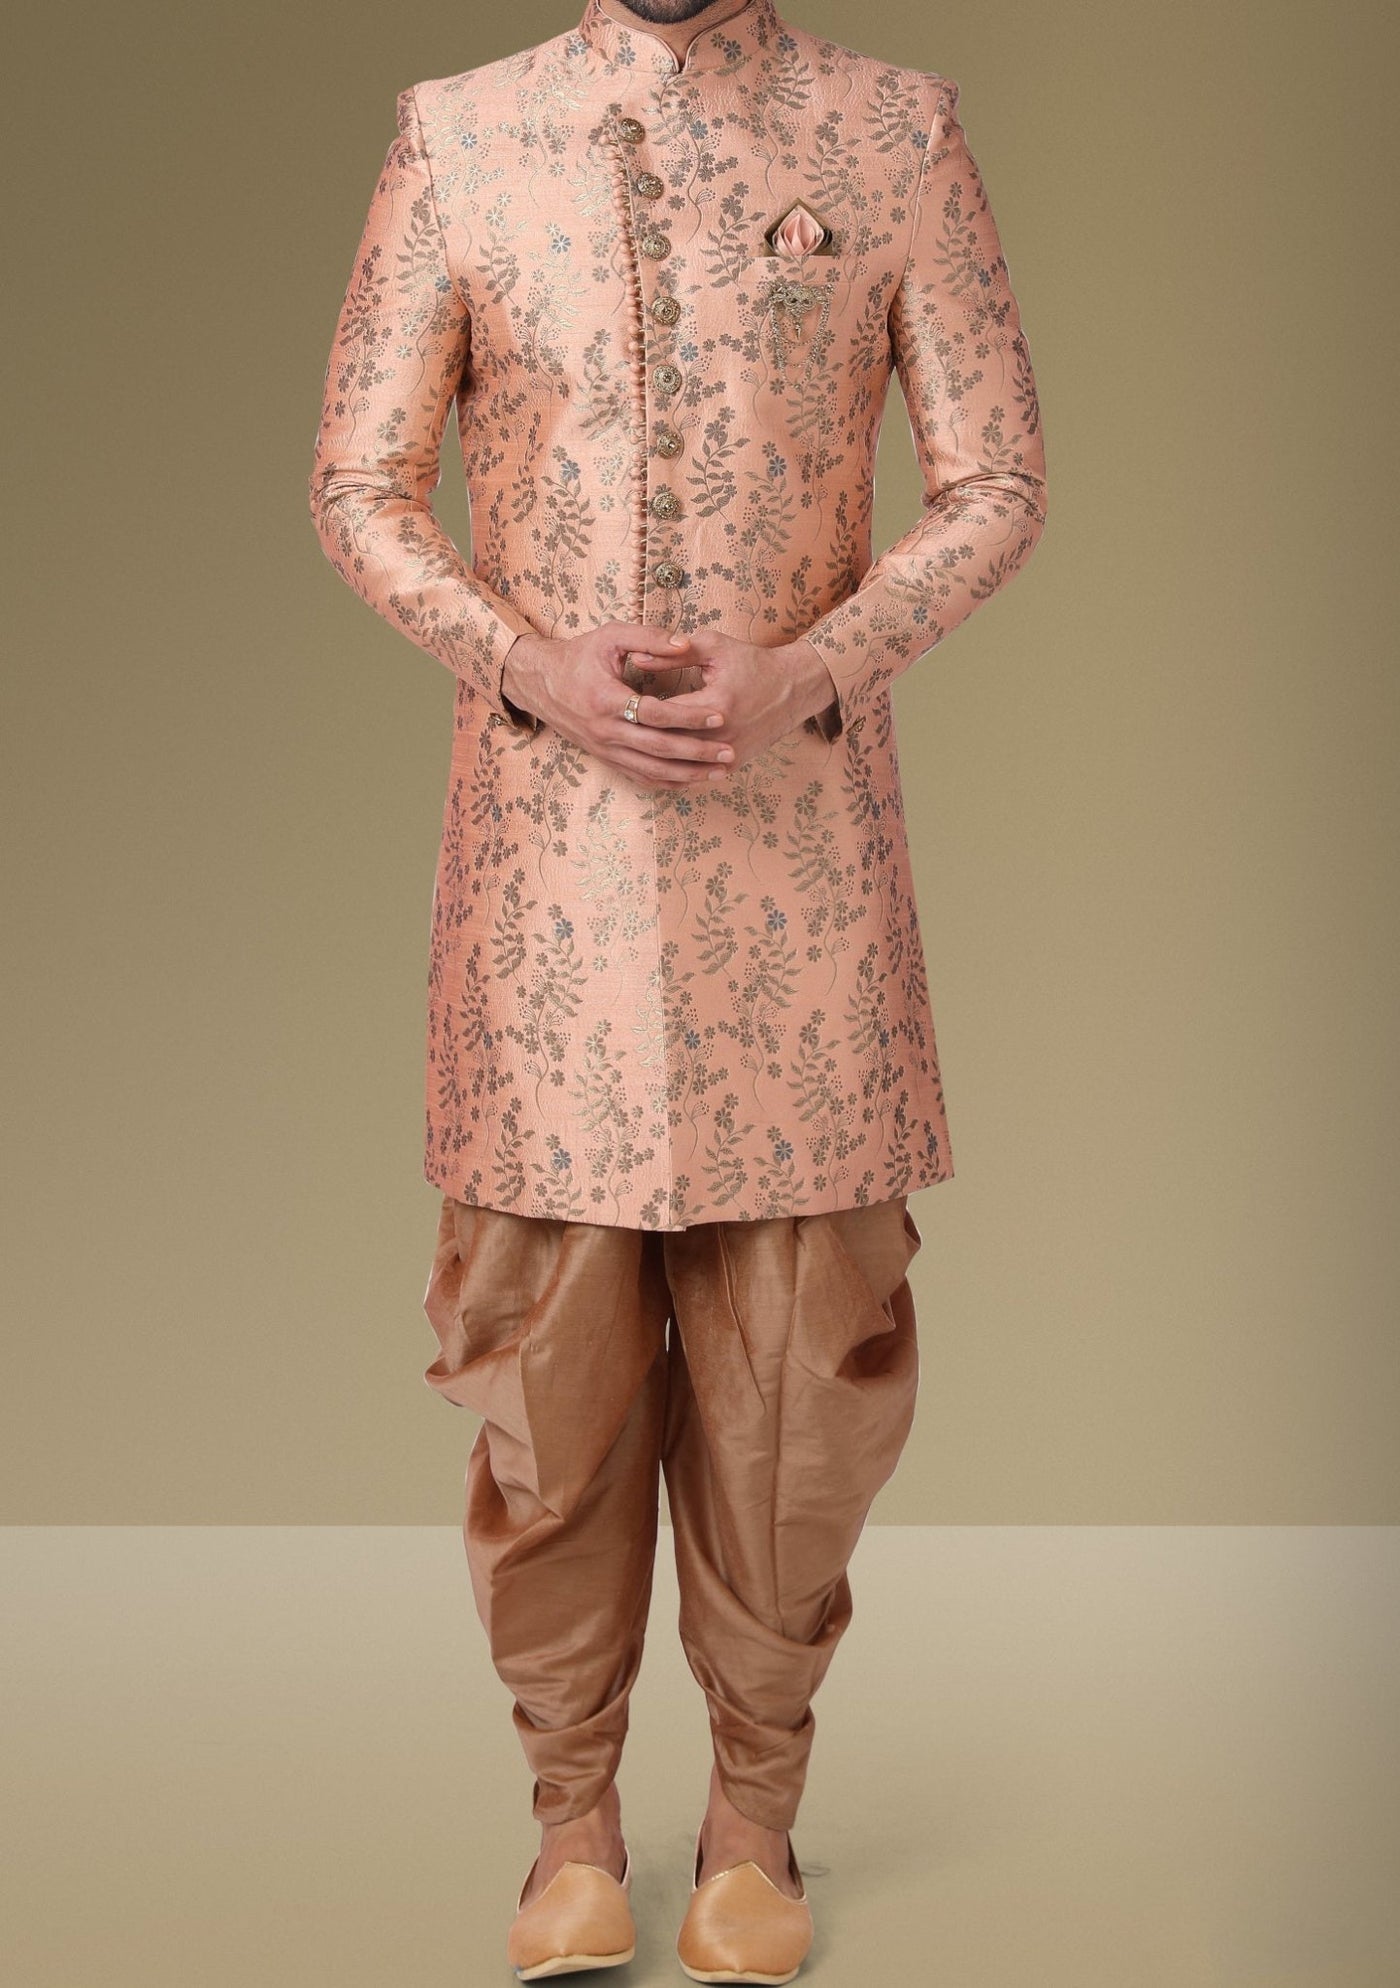 Men's Indo Western Party Wear Sherwani Suit - db18076